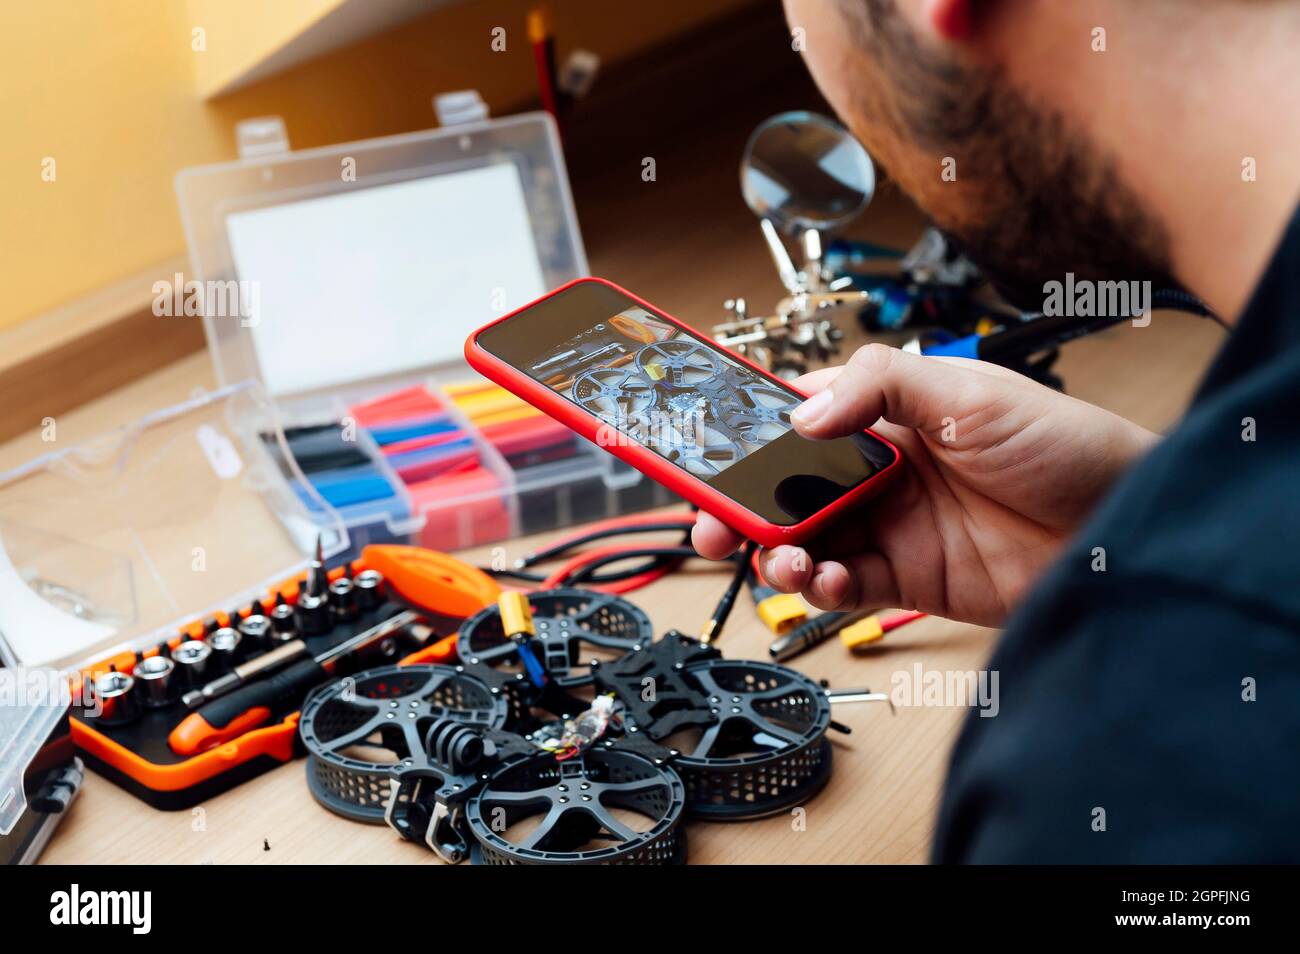 Mann repariert Eine Drohne.Ingenieur repariert eine Drohne zu Hause Stockfoto